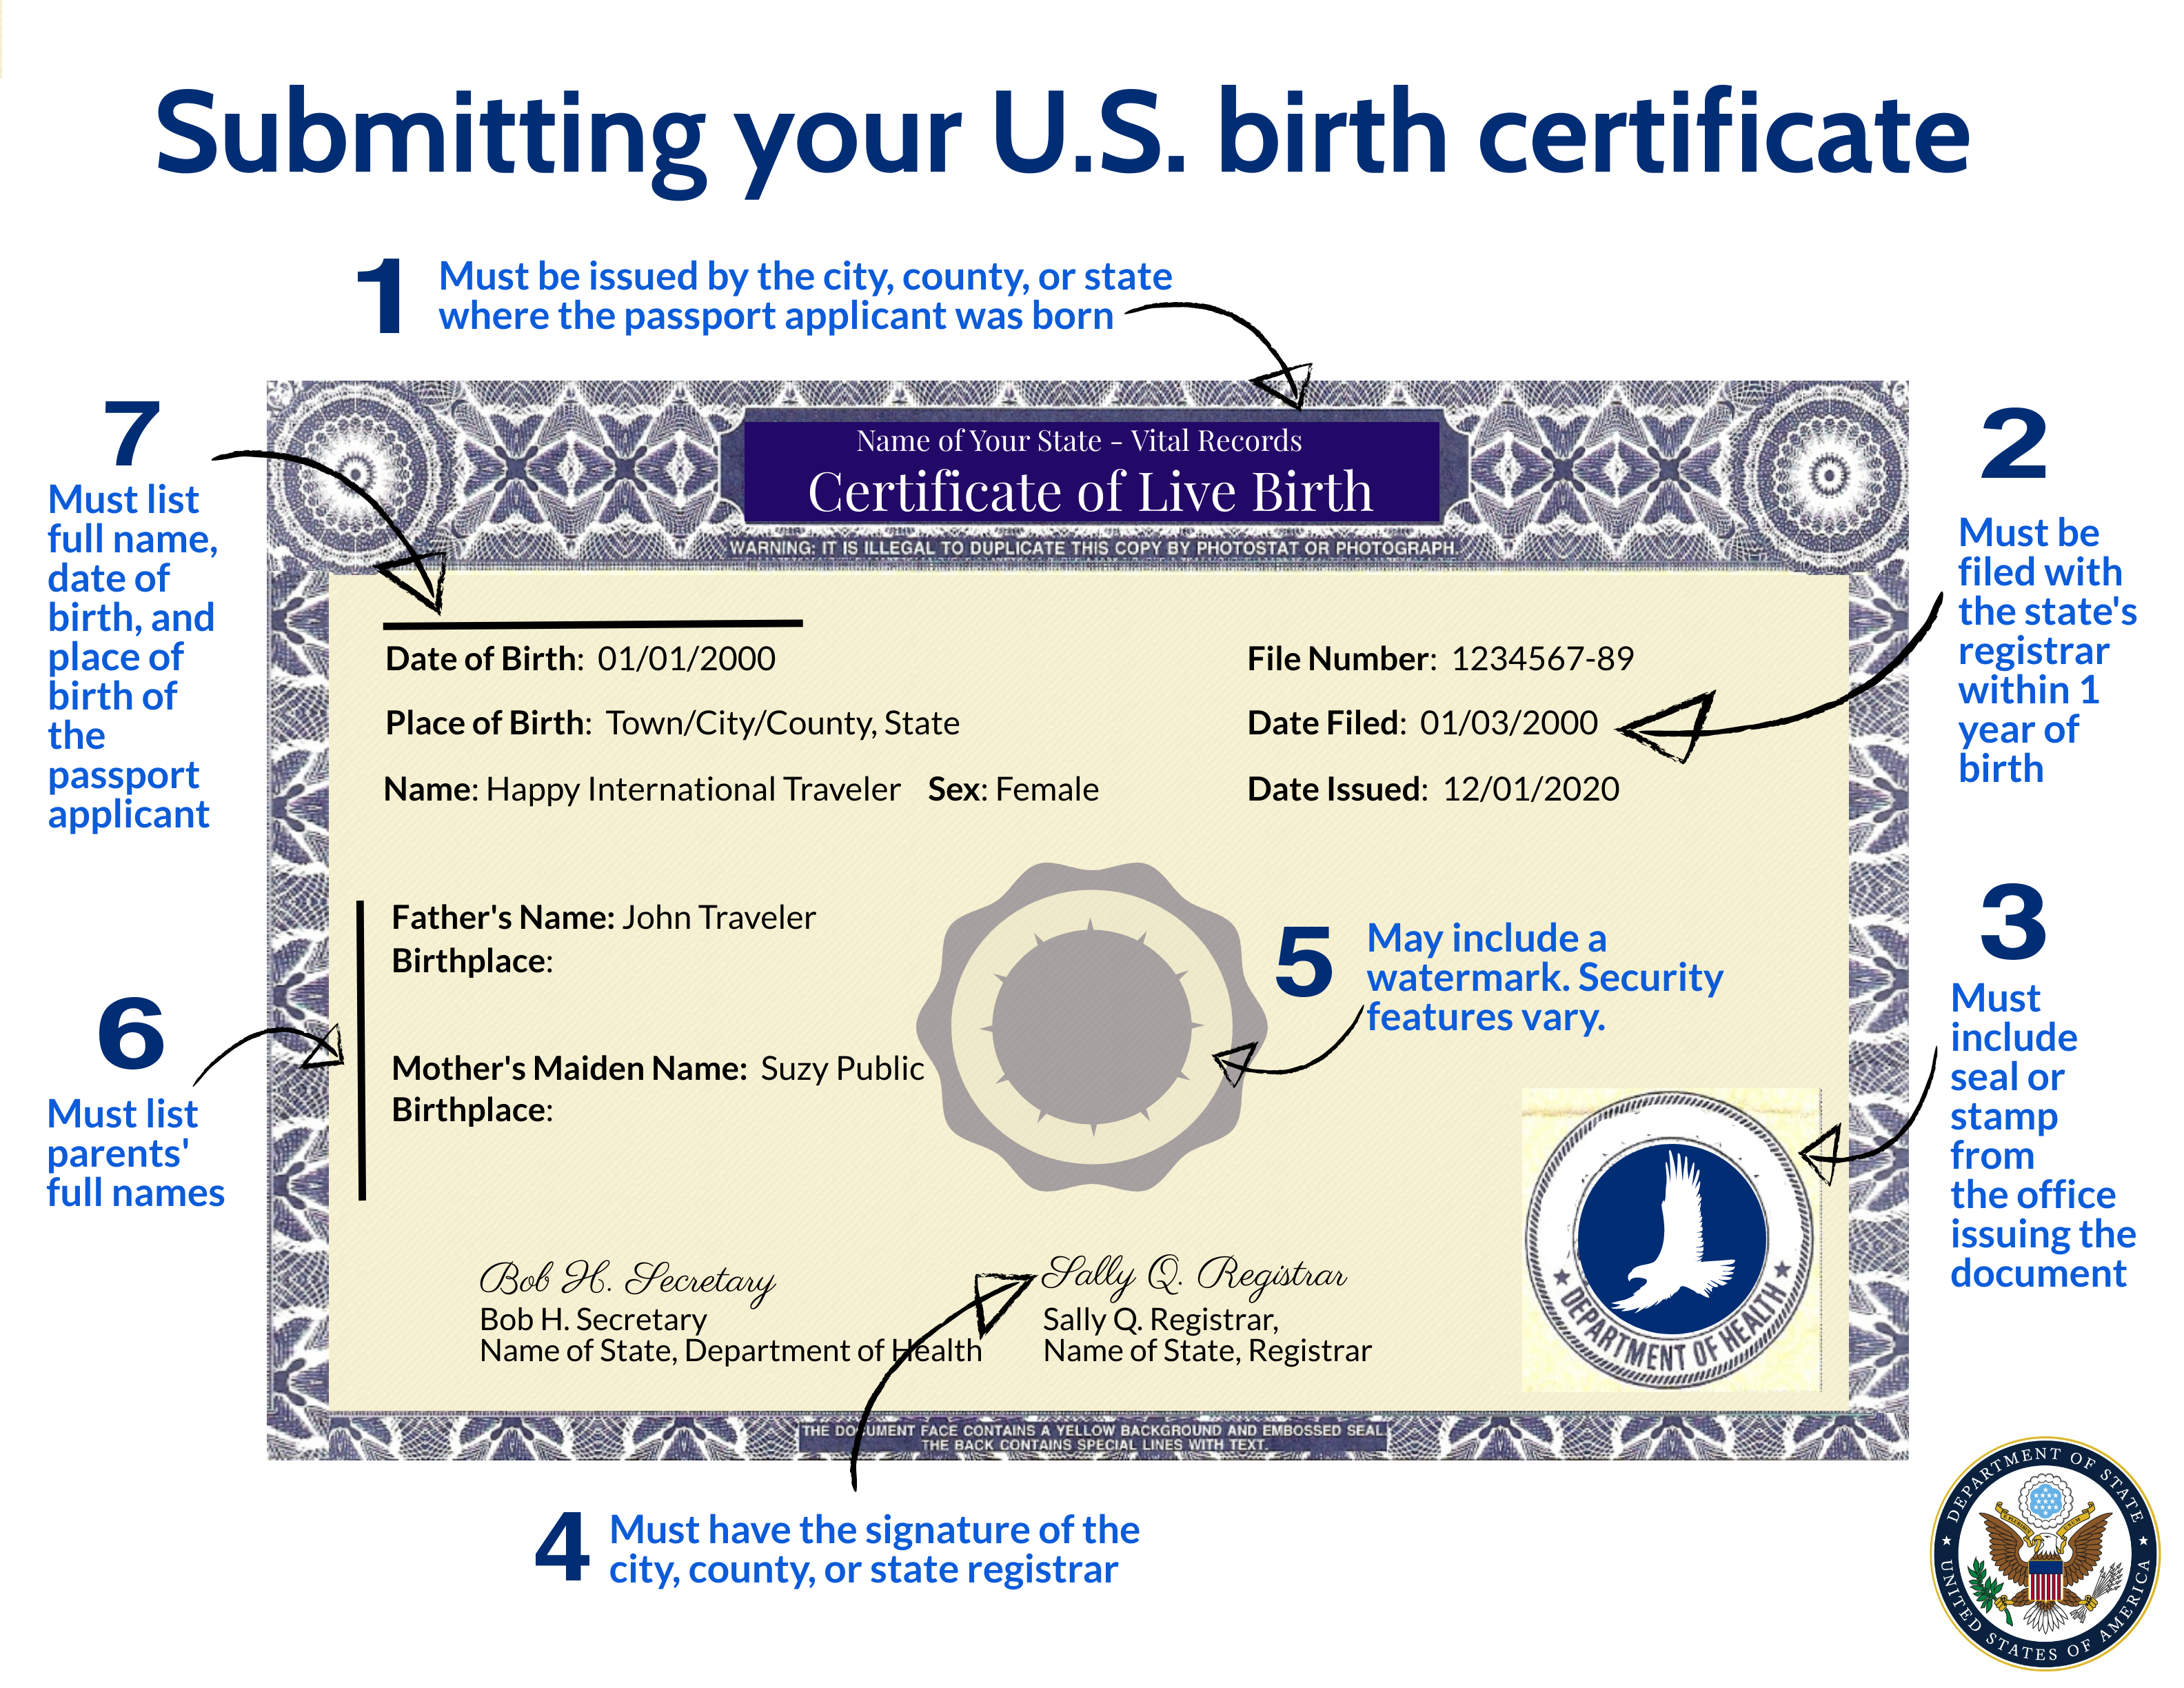 Sample of a U.S. Birth Certificate